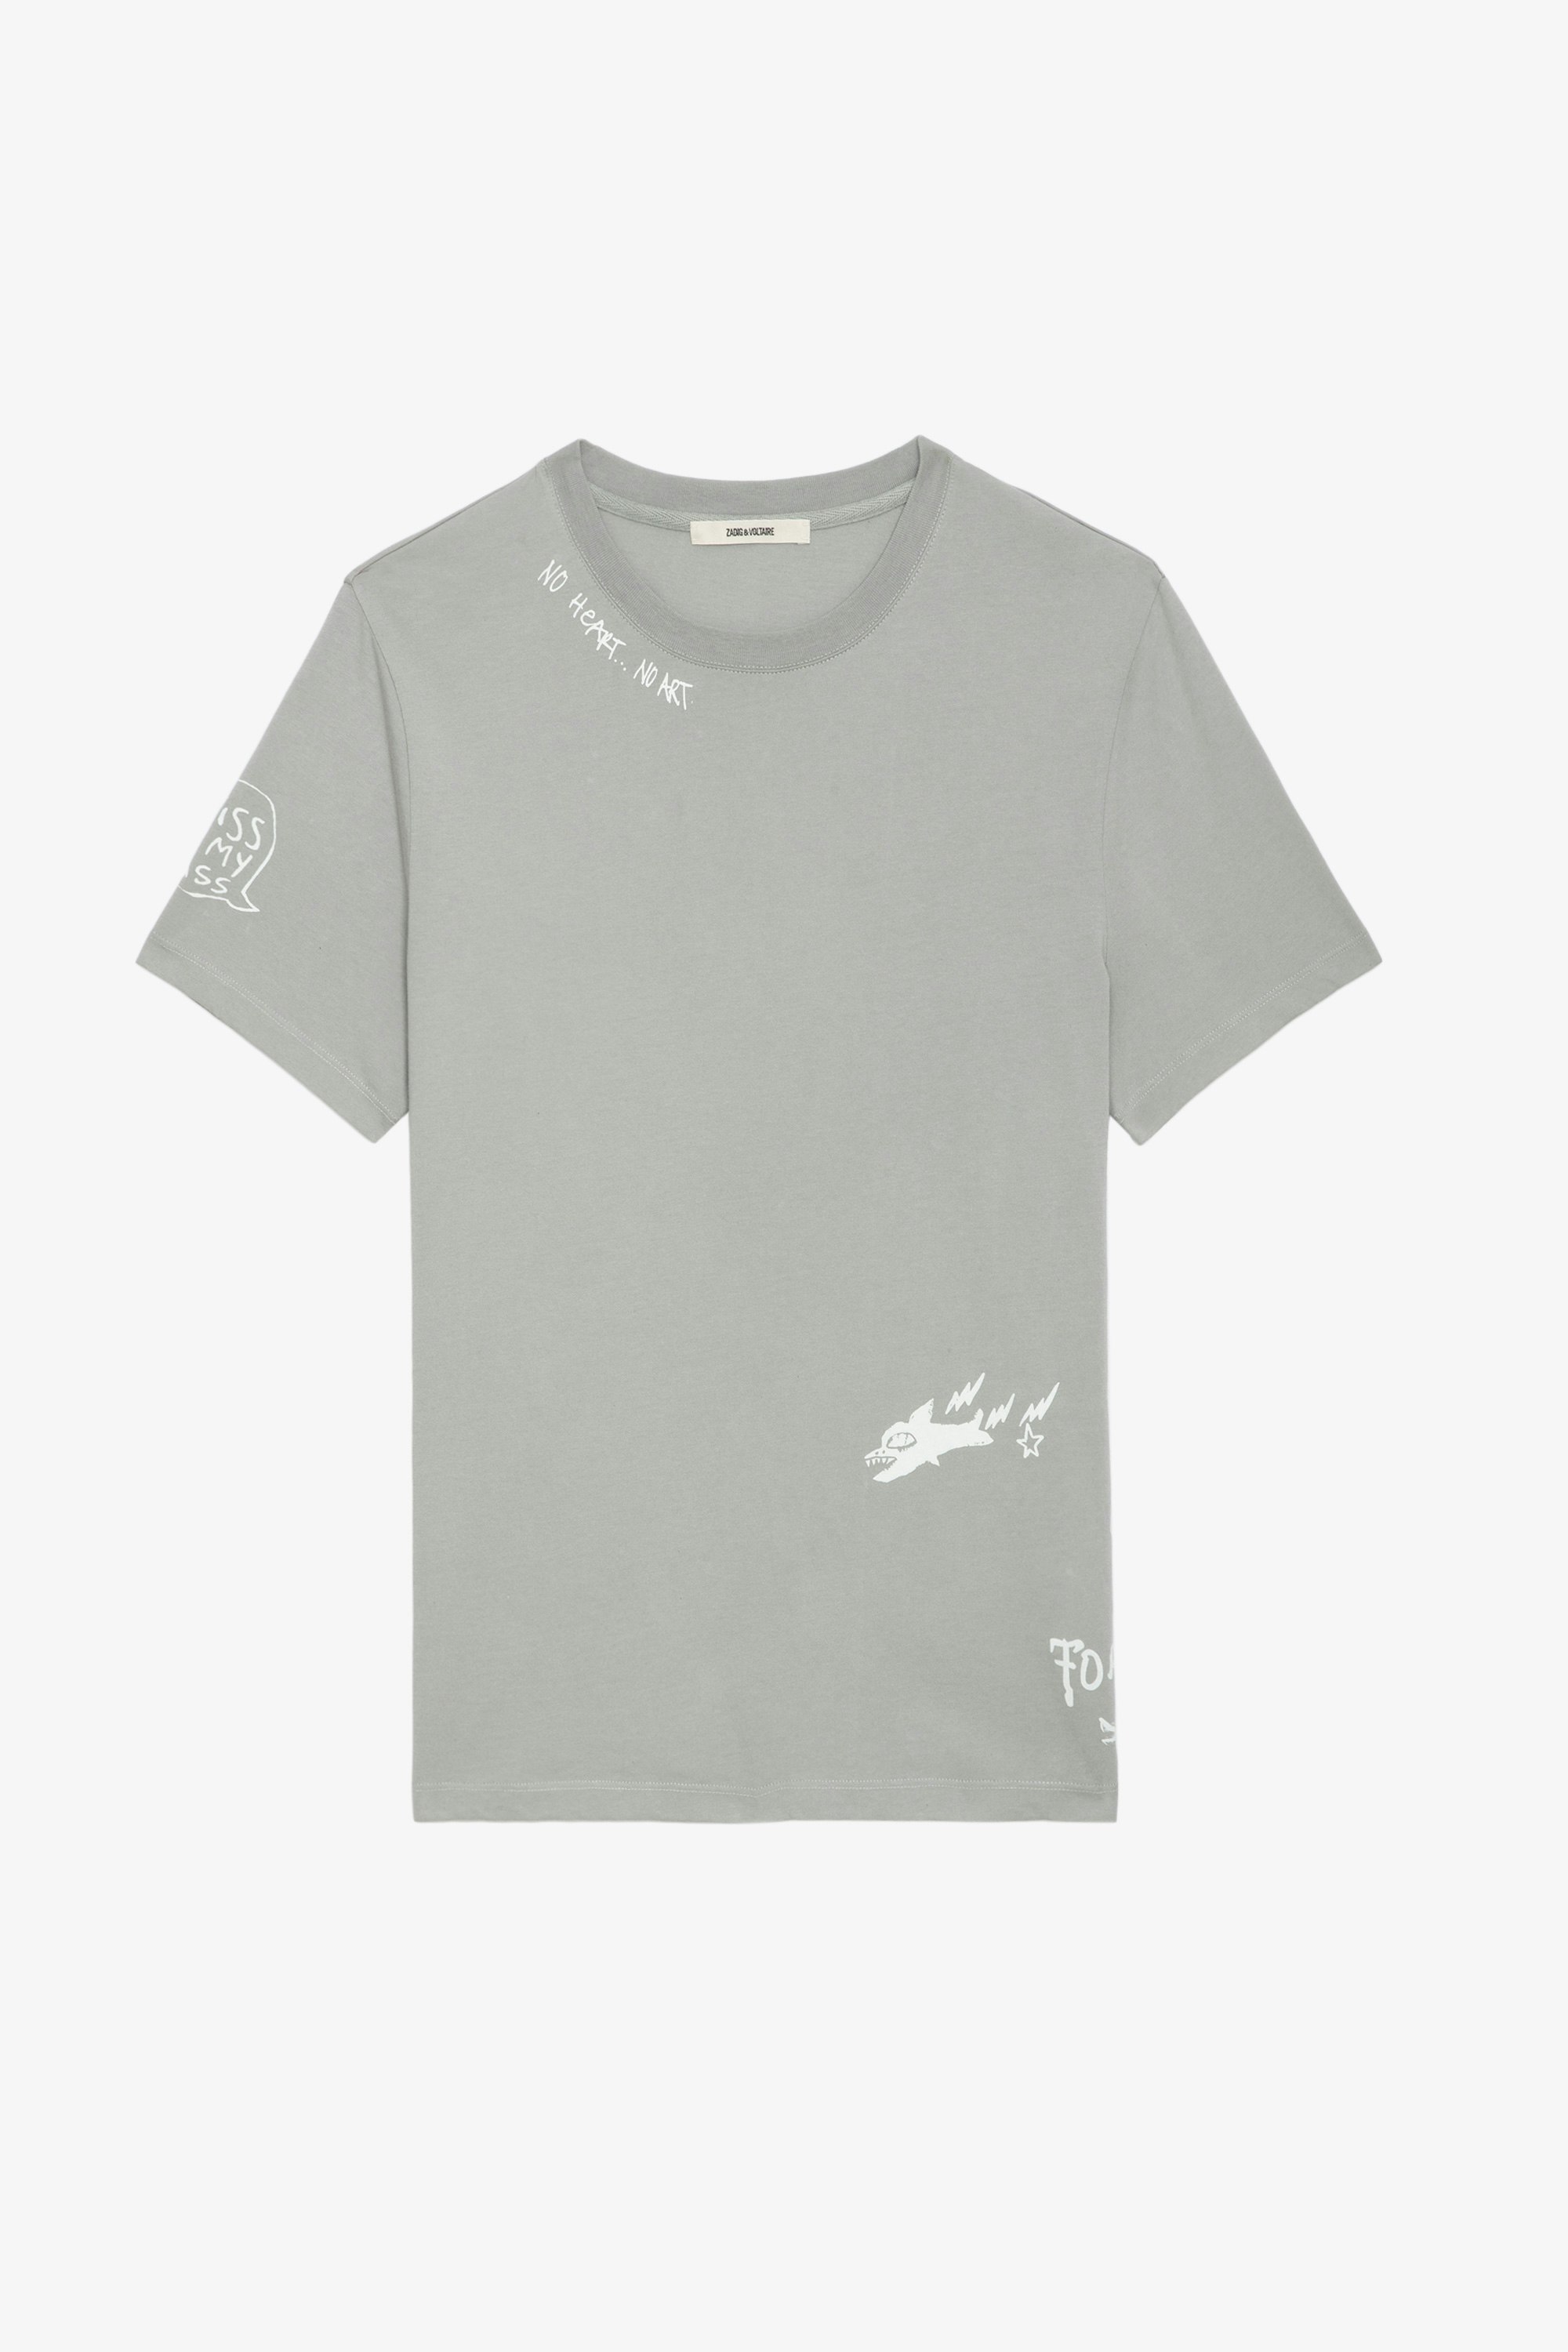 T-shirt Ted Tag - T-shirt en coton biologique gris orné de customisations créées par Humberto Cruz.